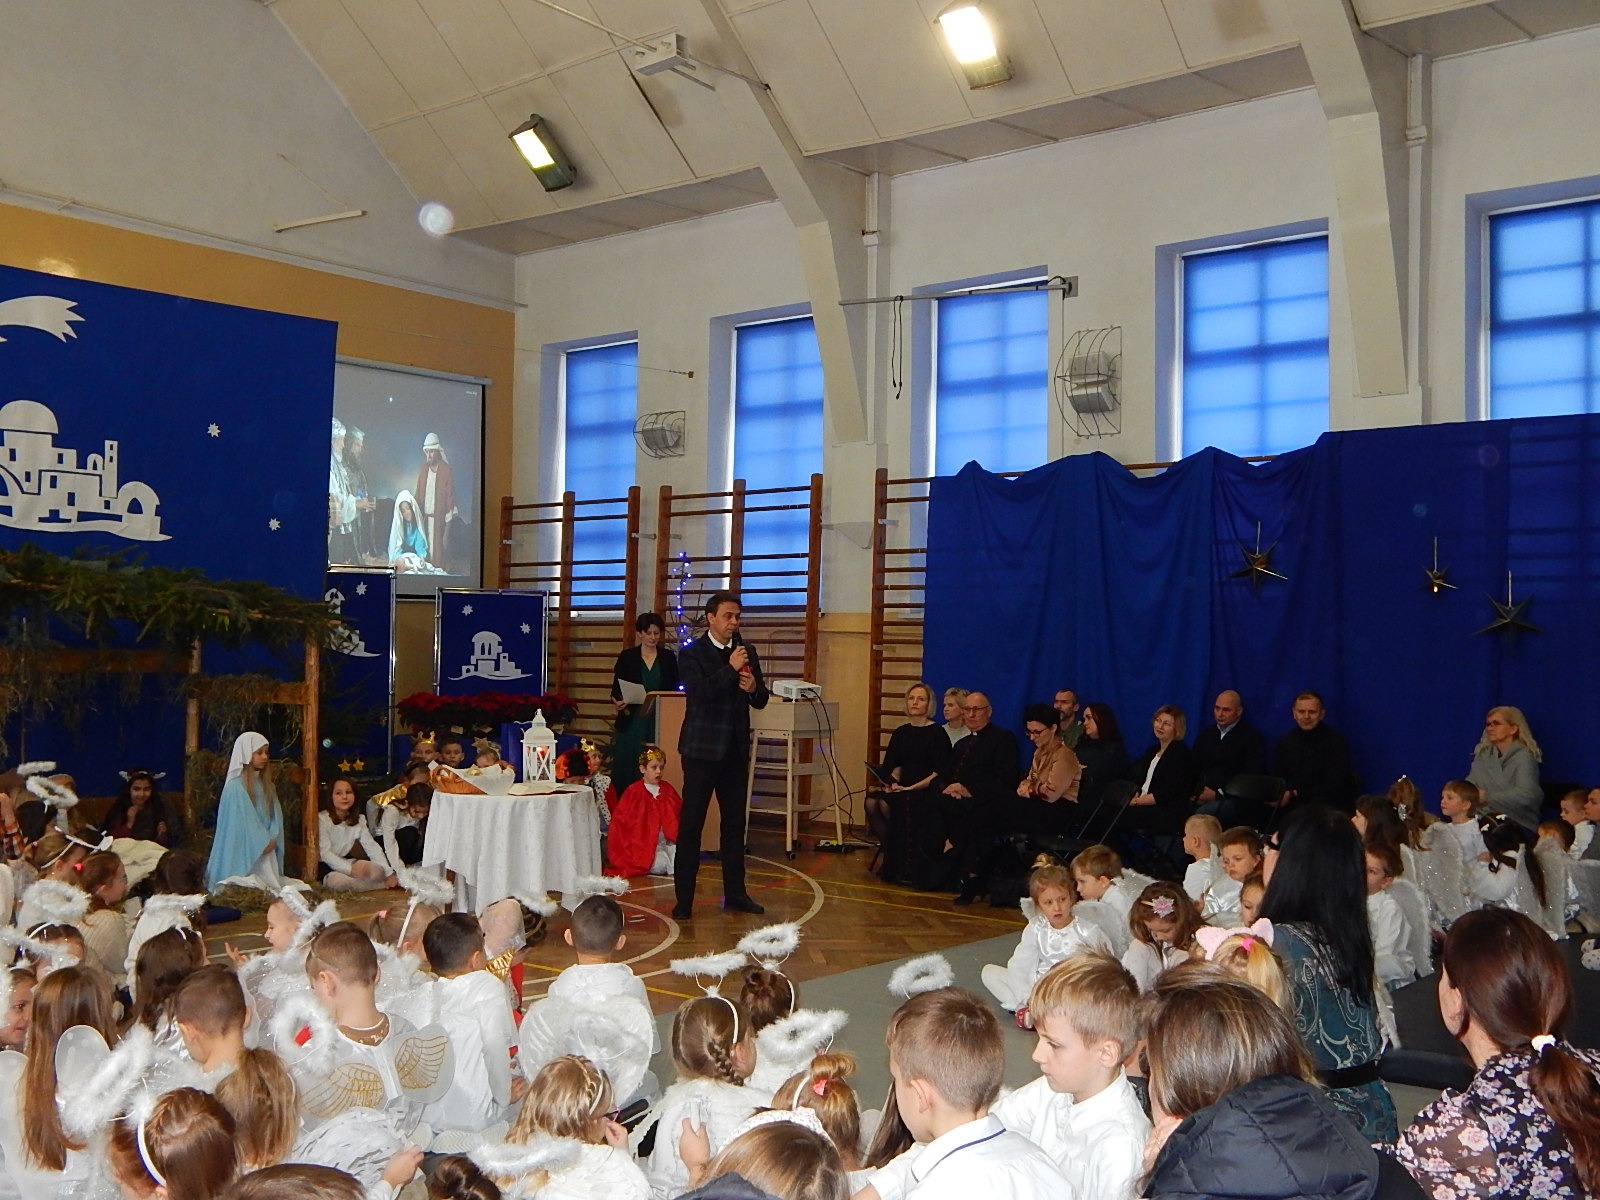 Jasełka - inscenizacja Bożego Narodzenia w Szkole Podstawowej Nr 2 im. M. Kopernika w Olecku